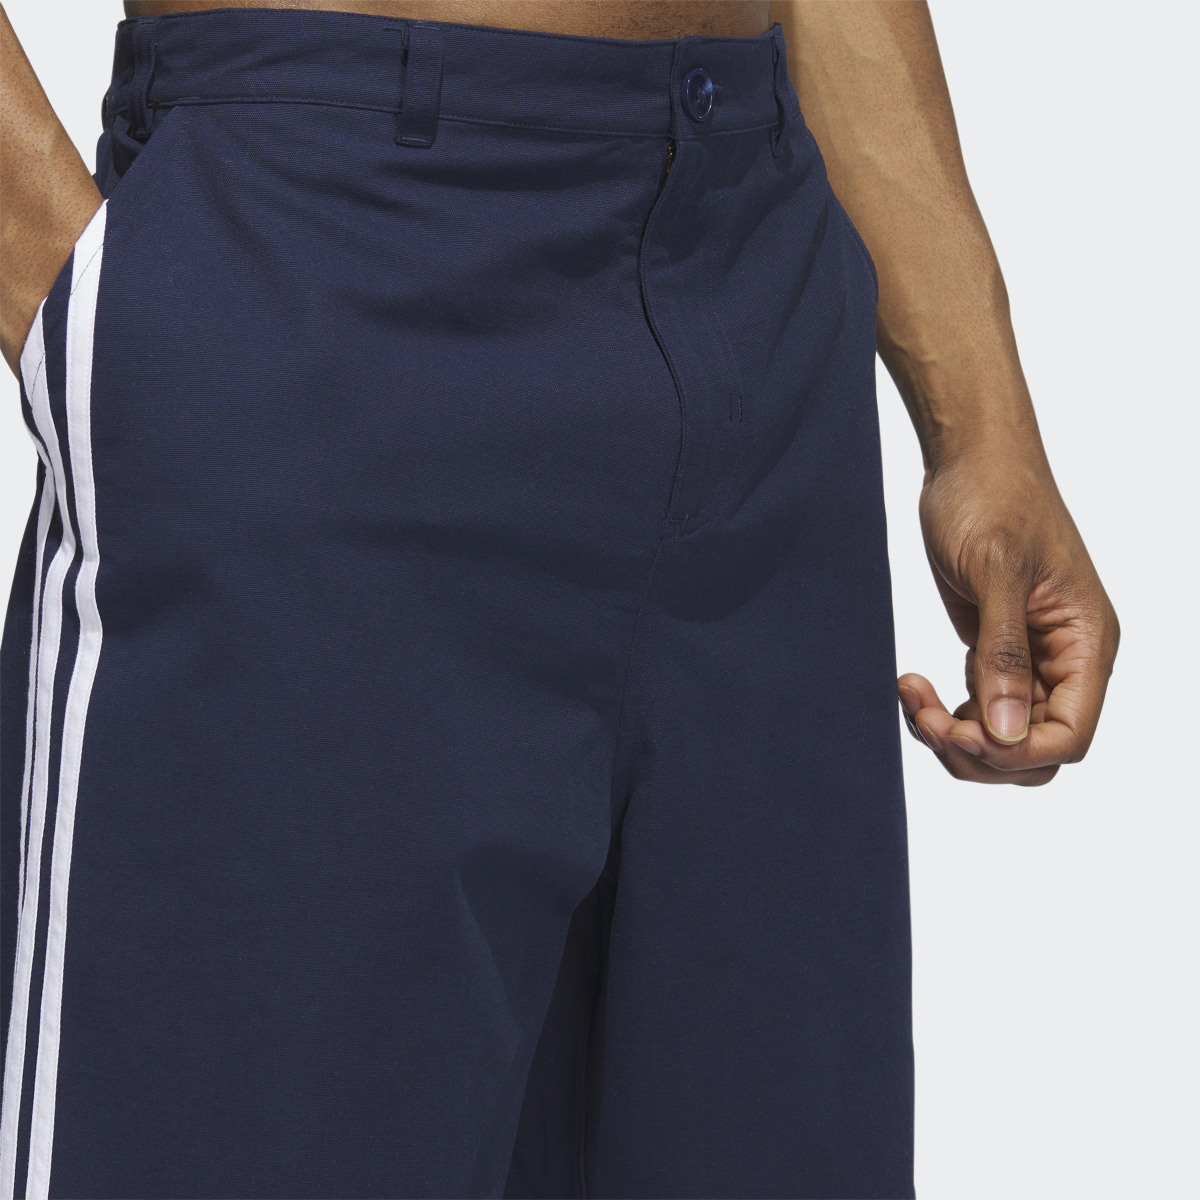 Adidas 3-Stripes Skate Chino Pants. 7